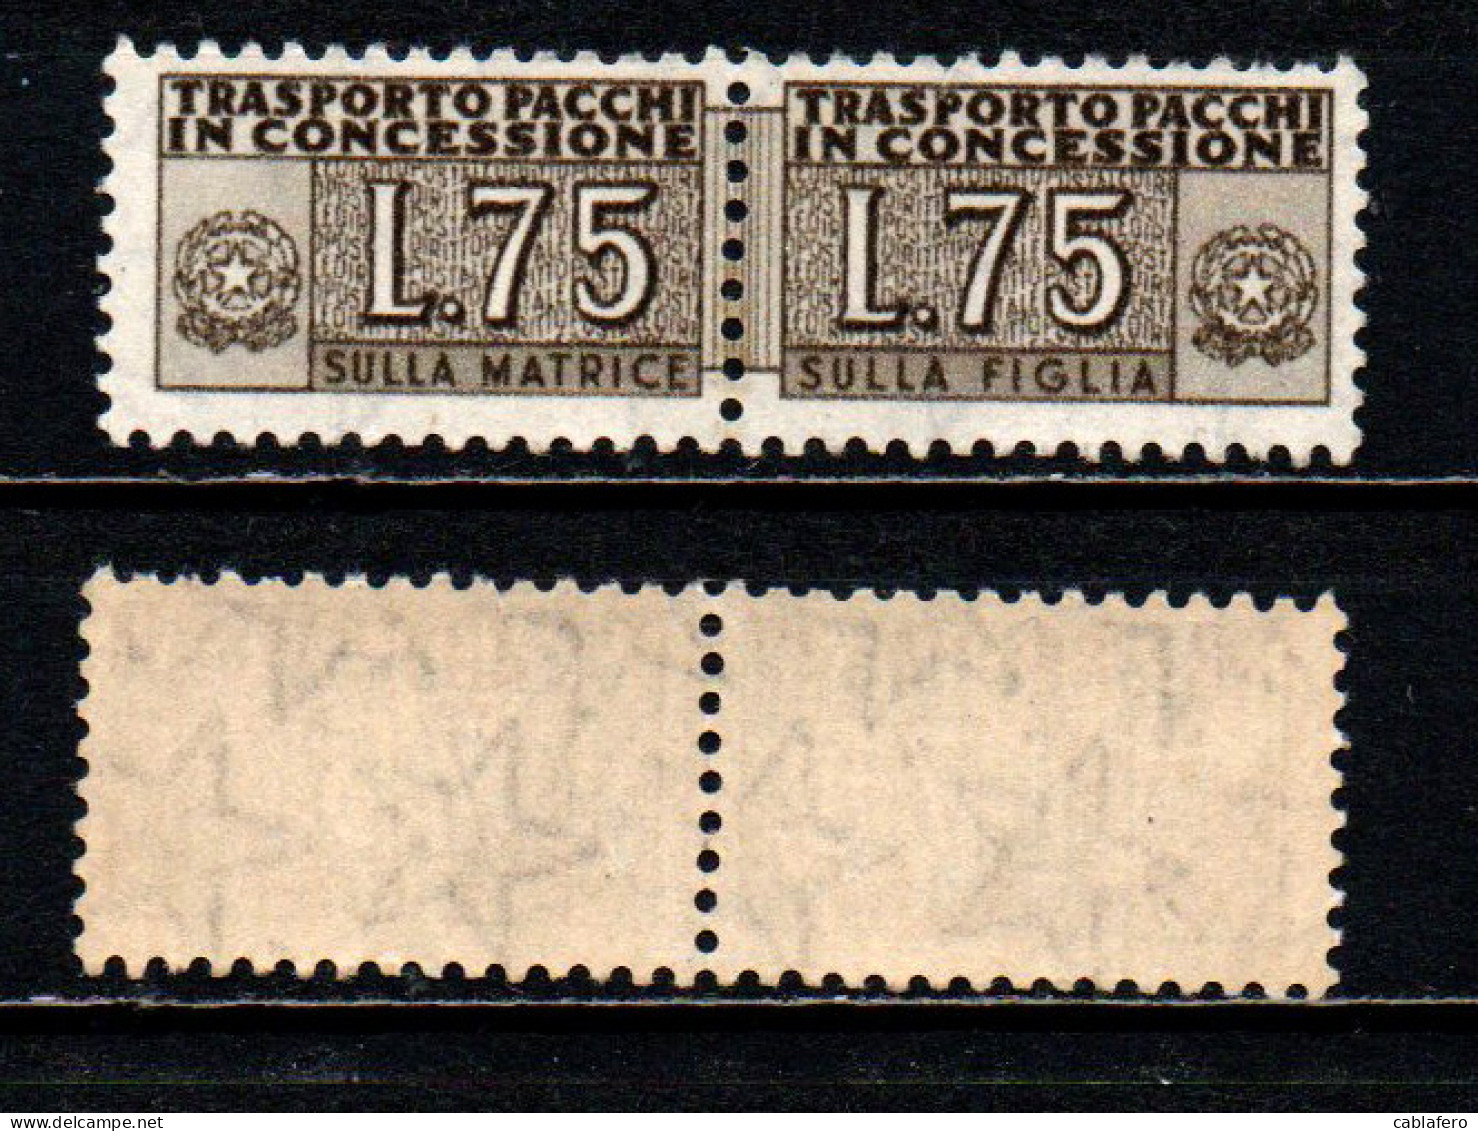 ITALIA - 1955 - PACCHI IN CONCESSIONE - FILIGRANA STELLE - 75 LIRE - MNH - Pacchi In Concessione